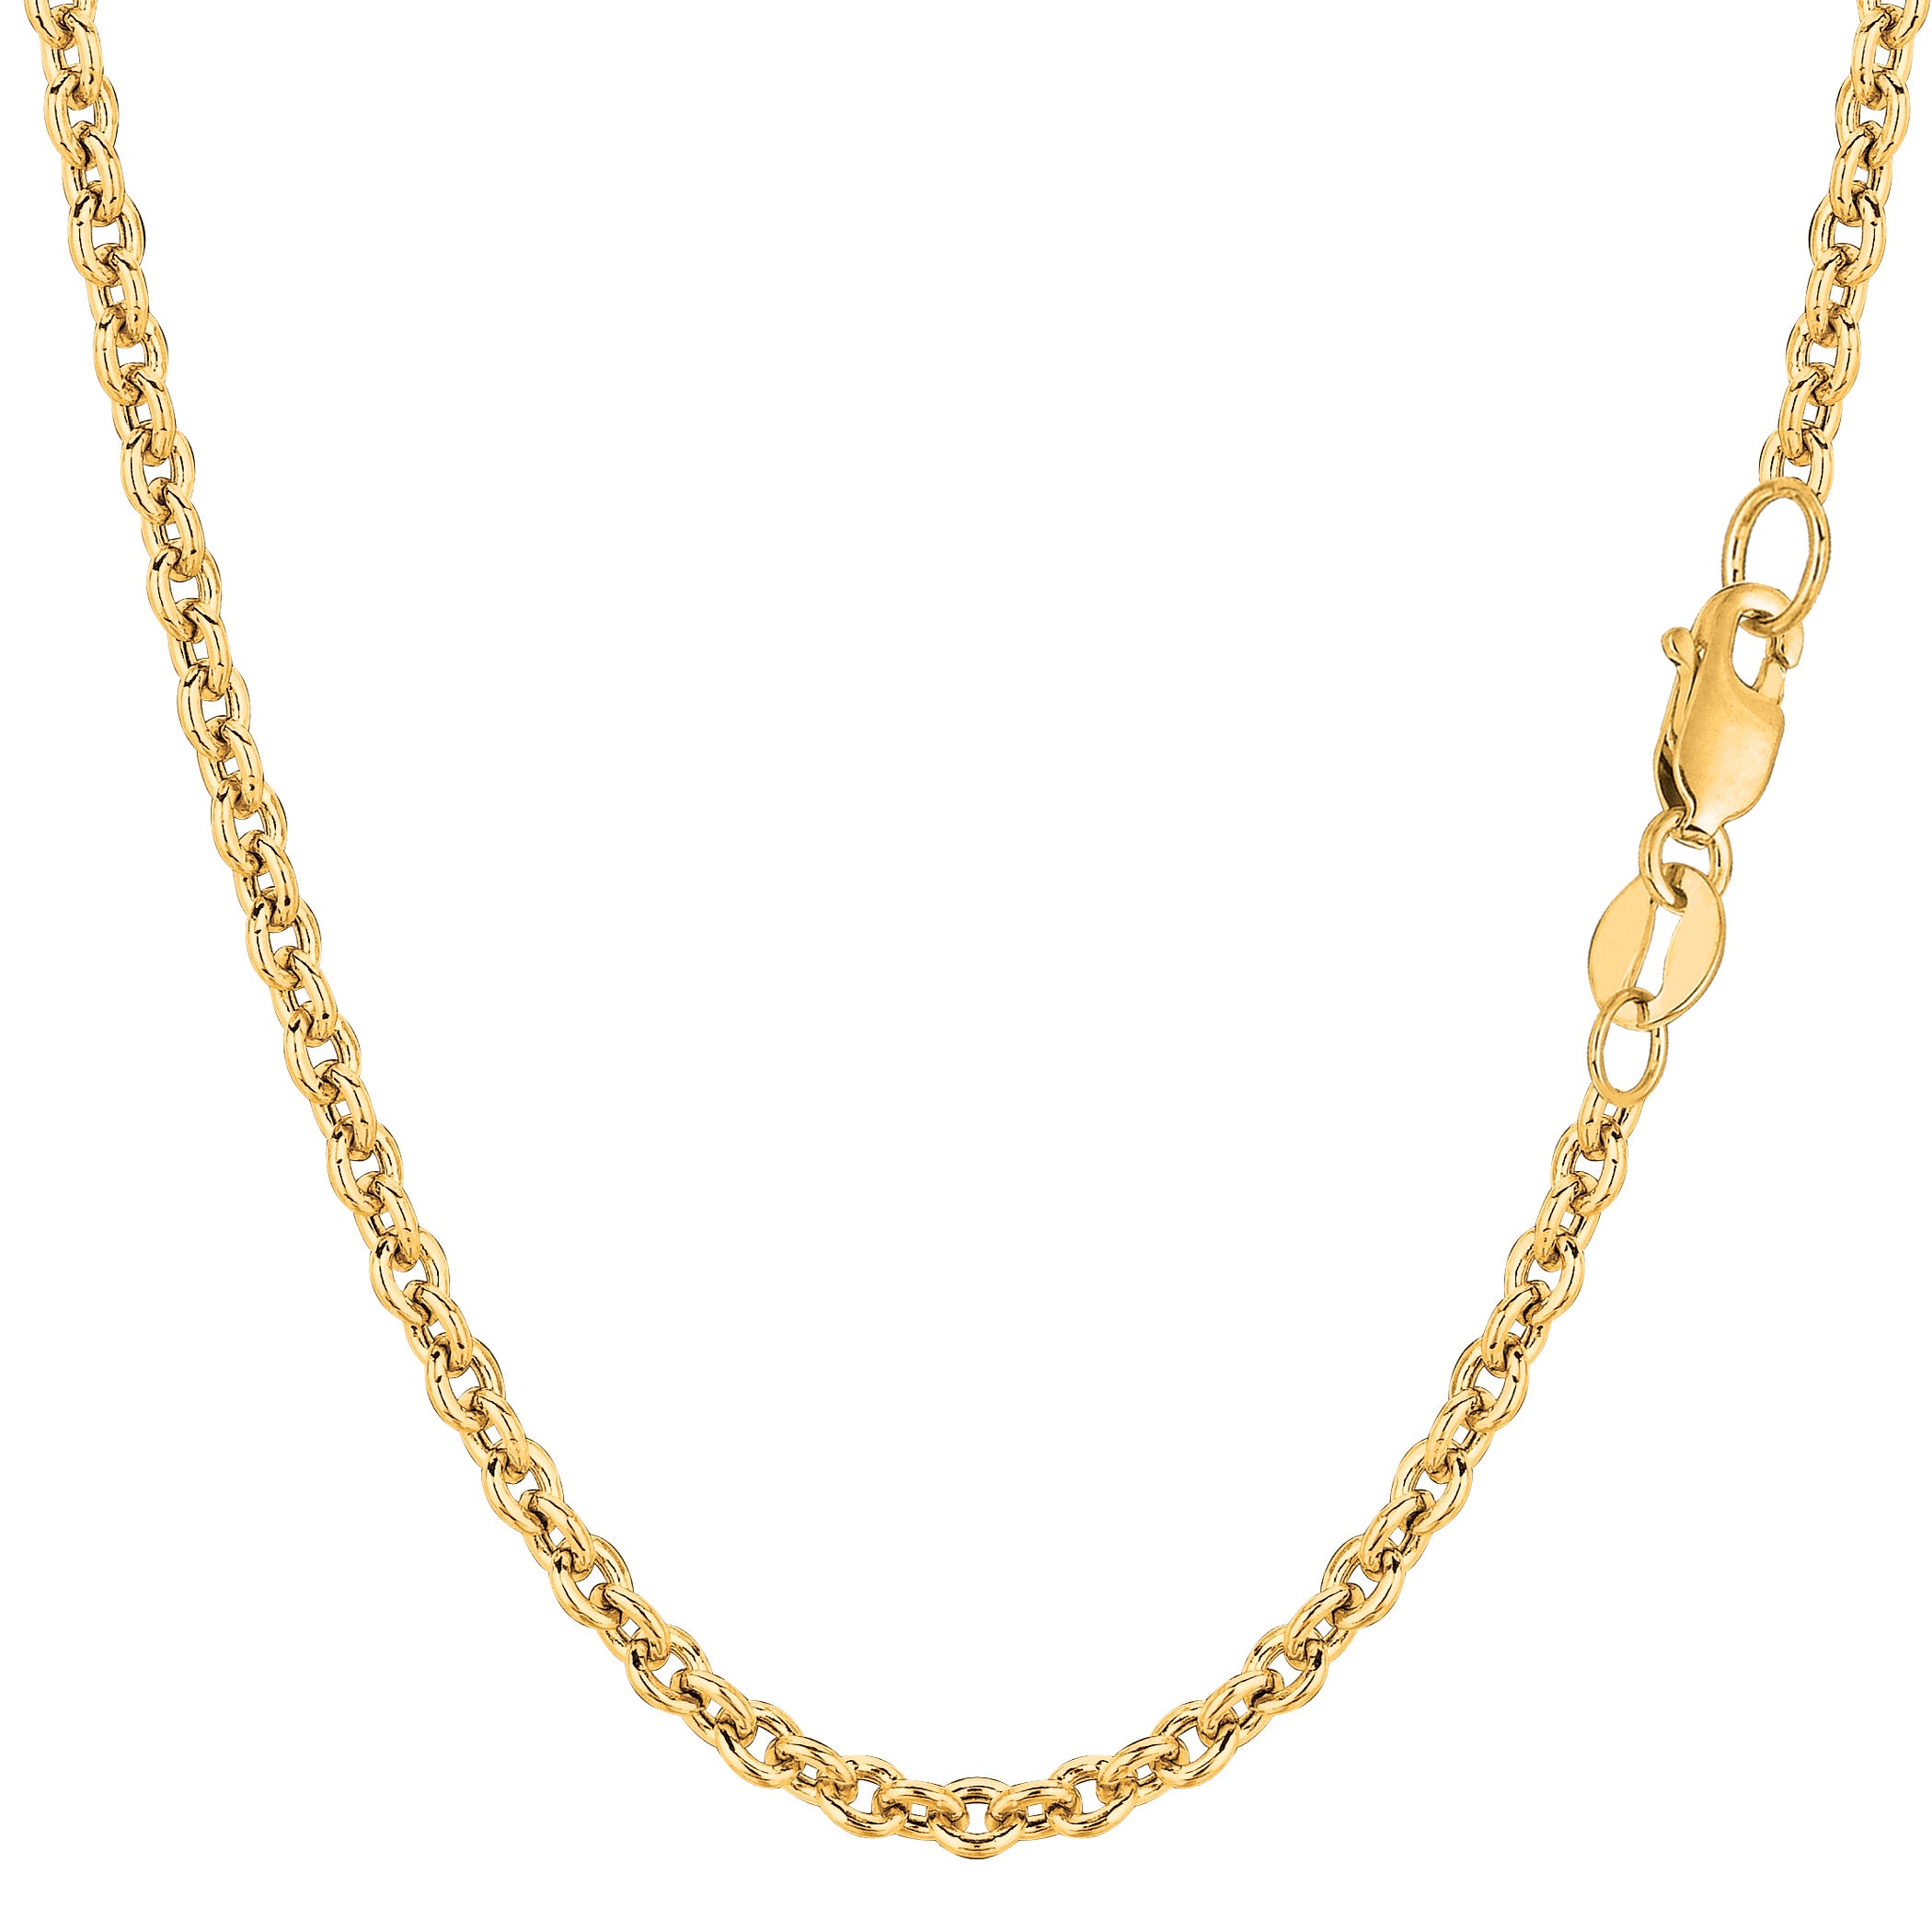 Collana a catena Forsantina in oro giallo 14k, gioielleria raffinata da 3,1 mm per uomo e donna